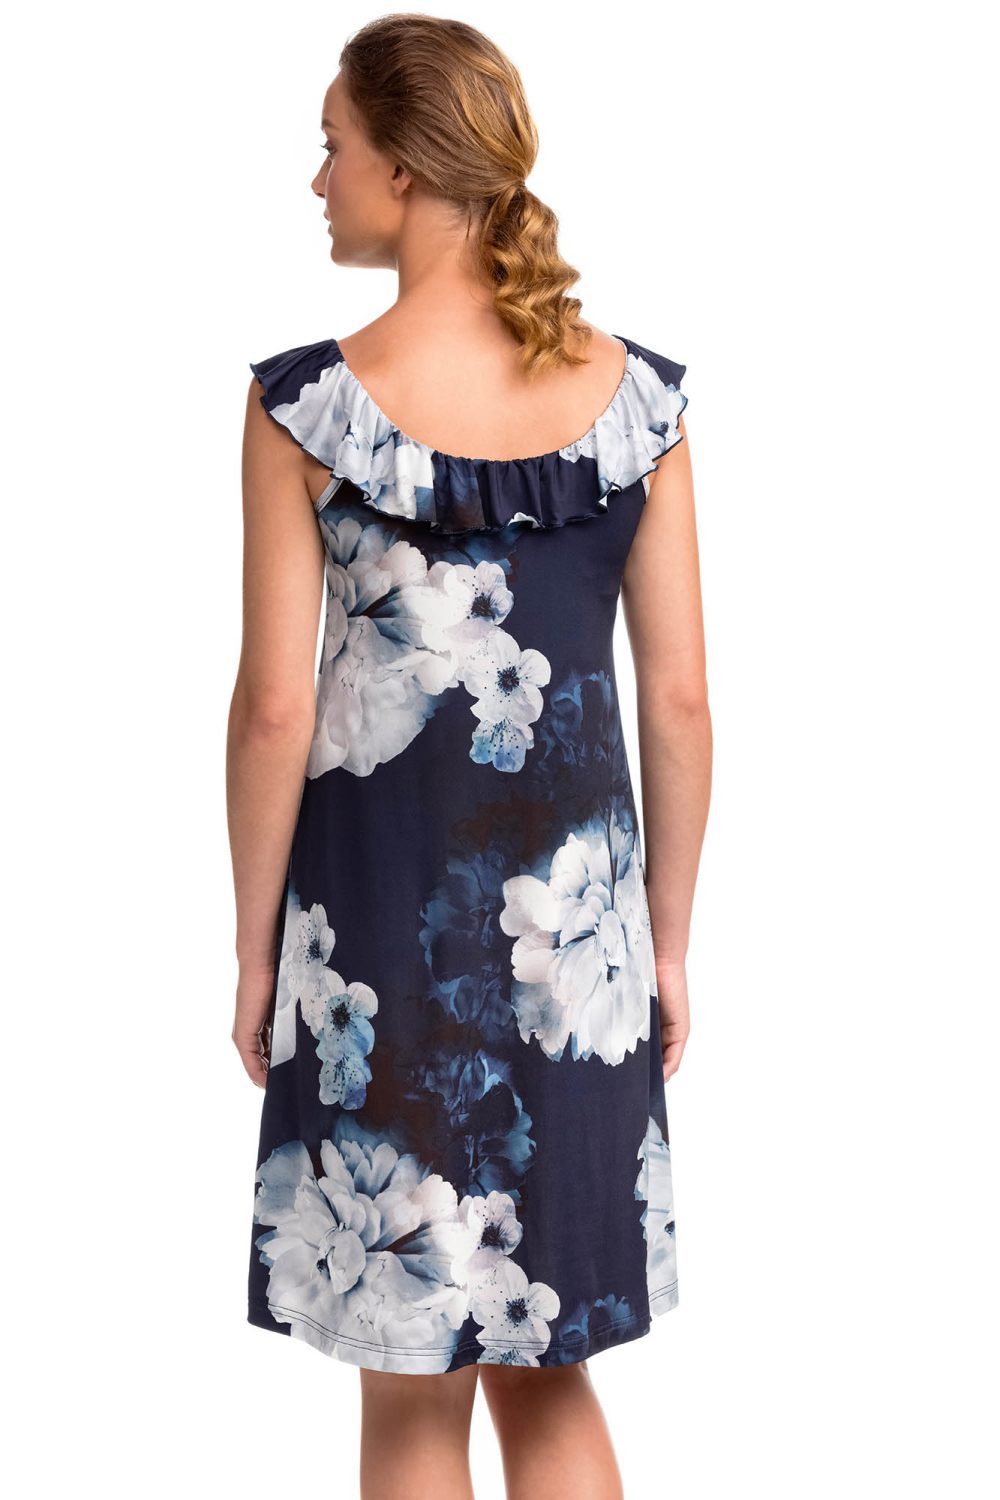 Vamp - Αμάνικο Φόρεμα με Βολάν 14464 BLUE MARINE